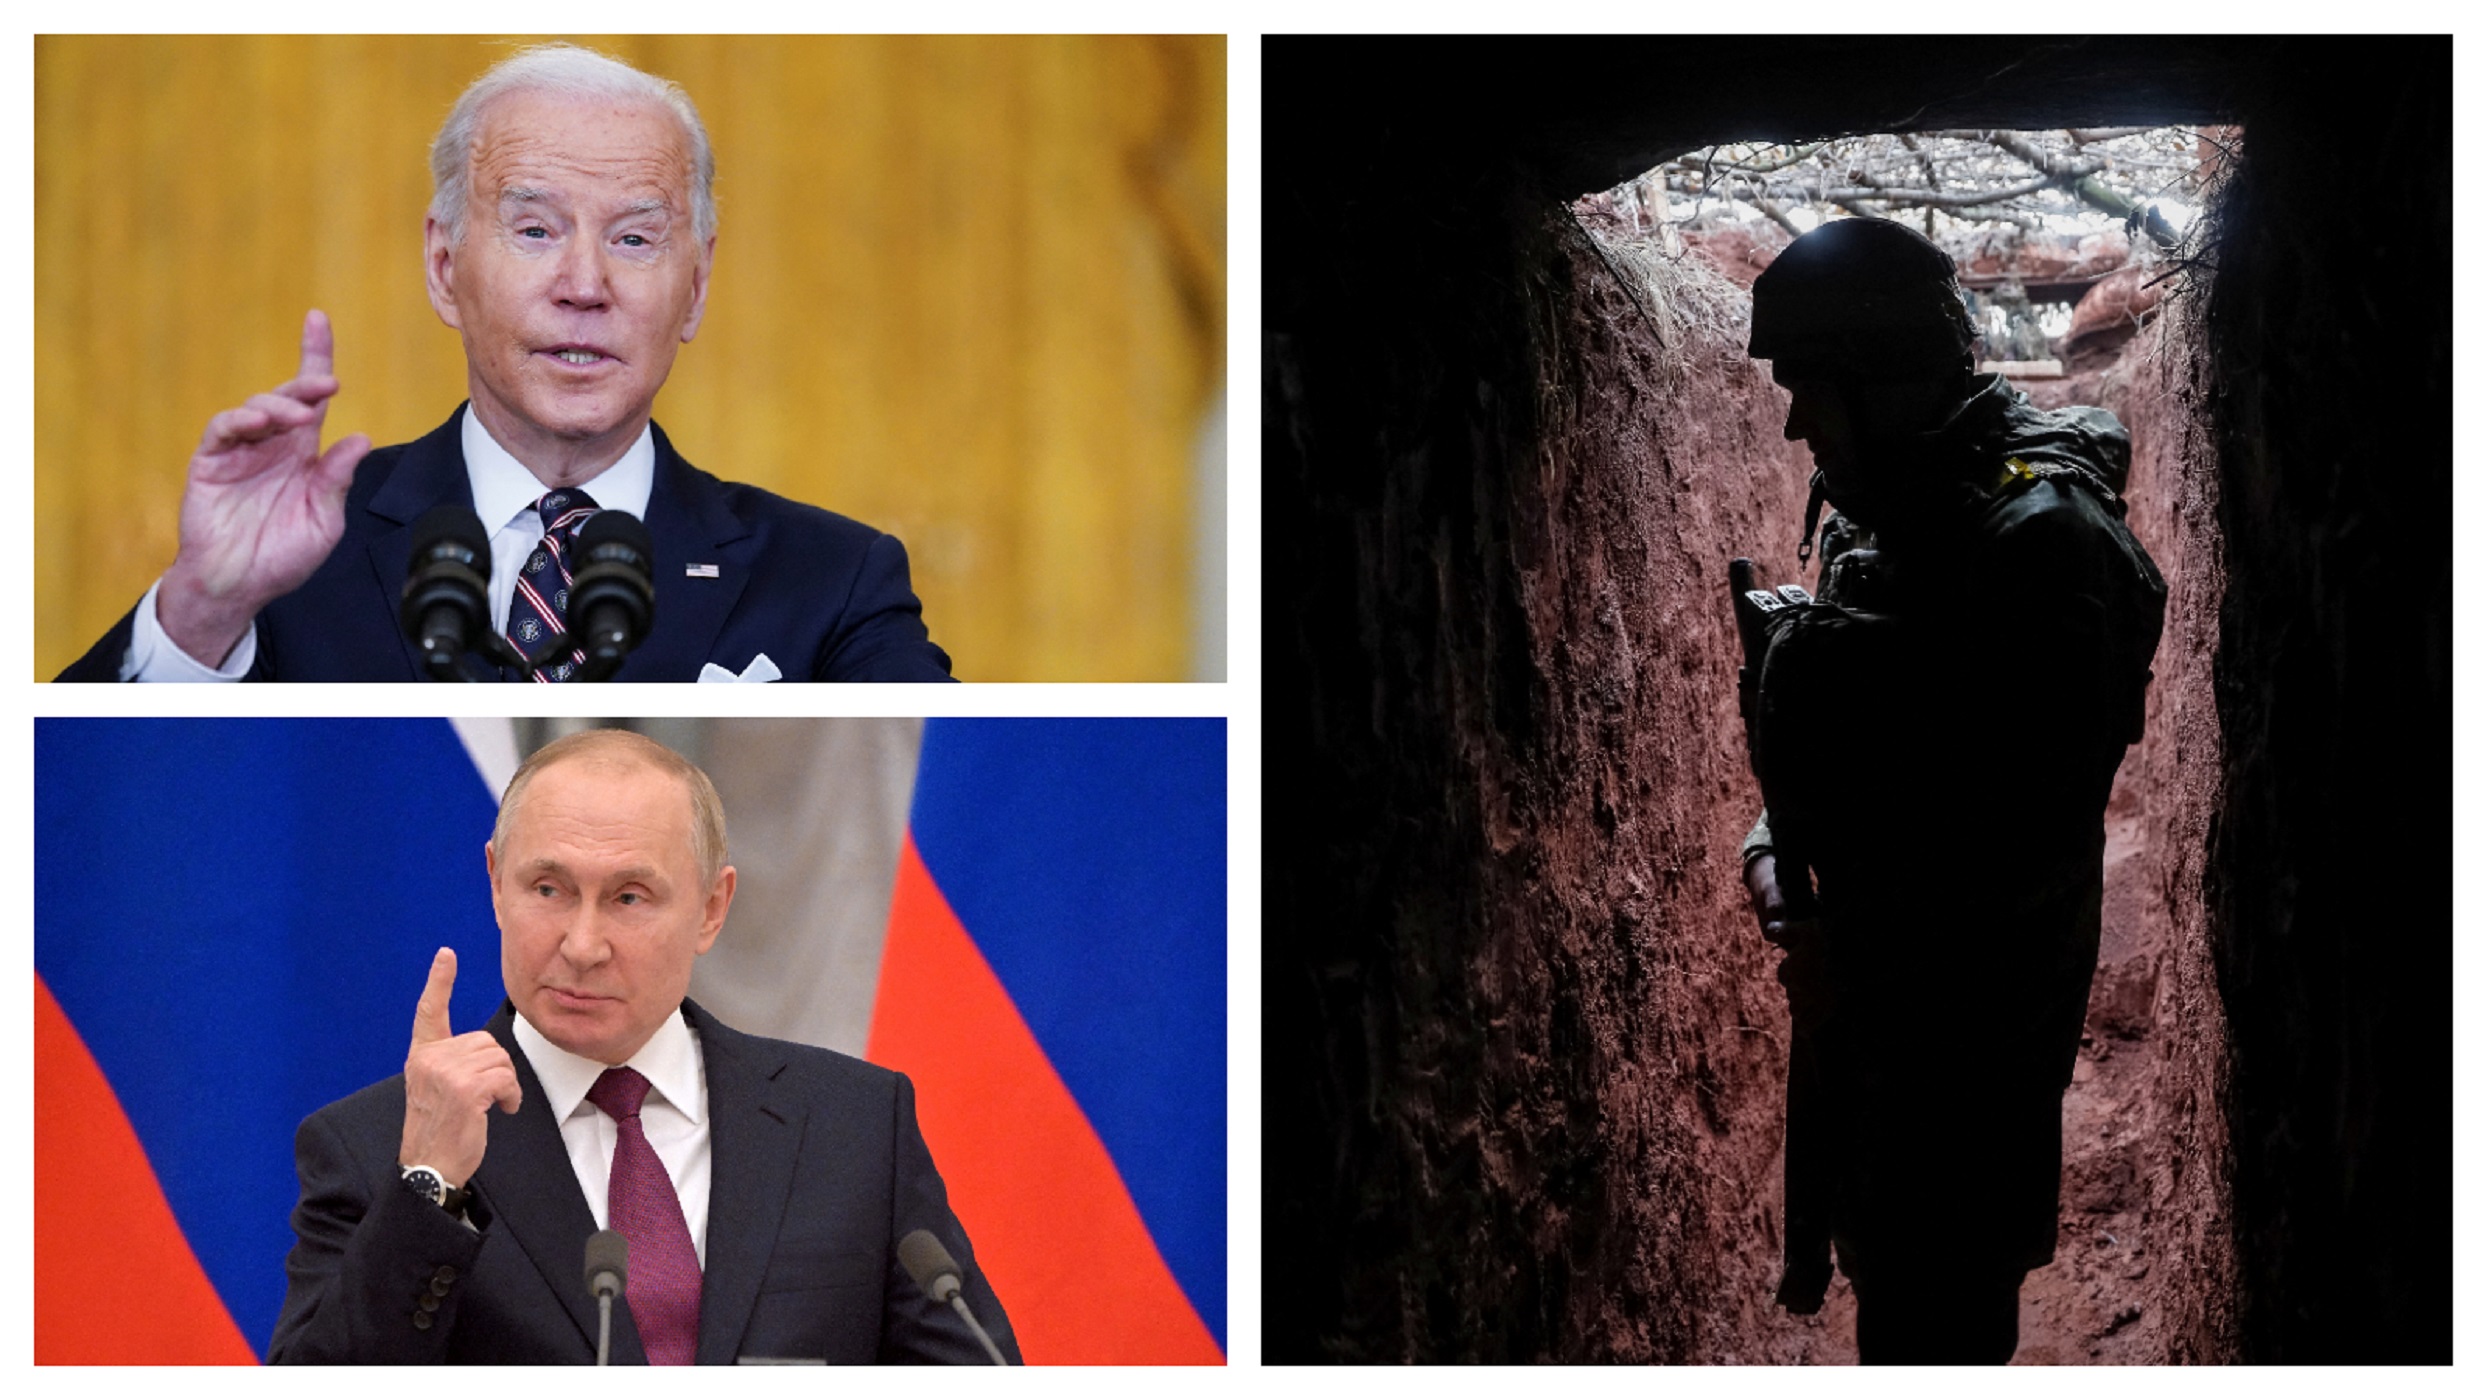 Πόλεμος στην Ουκρανία: Ομοβροντία κυρώσεων στην Ρωσία από Μπάιντεν και ΕΕ πριν «μιλήσουν» τα όπλα